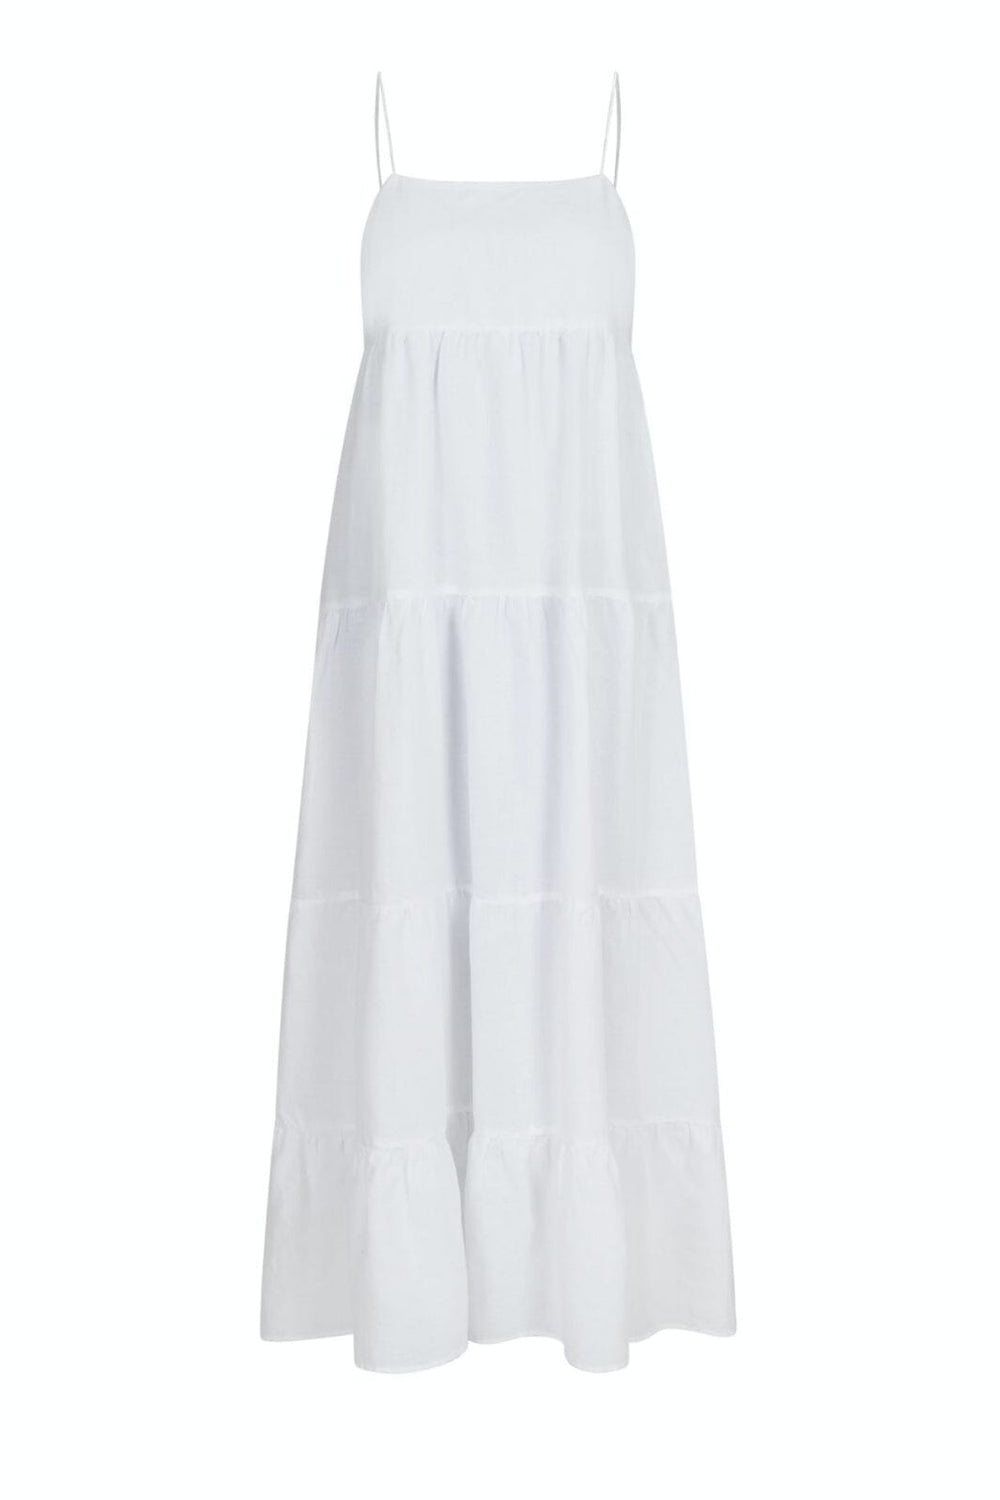 Neo Noir - Haily Linen Dress - White Kjoler 